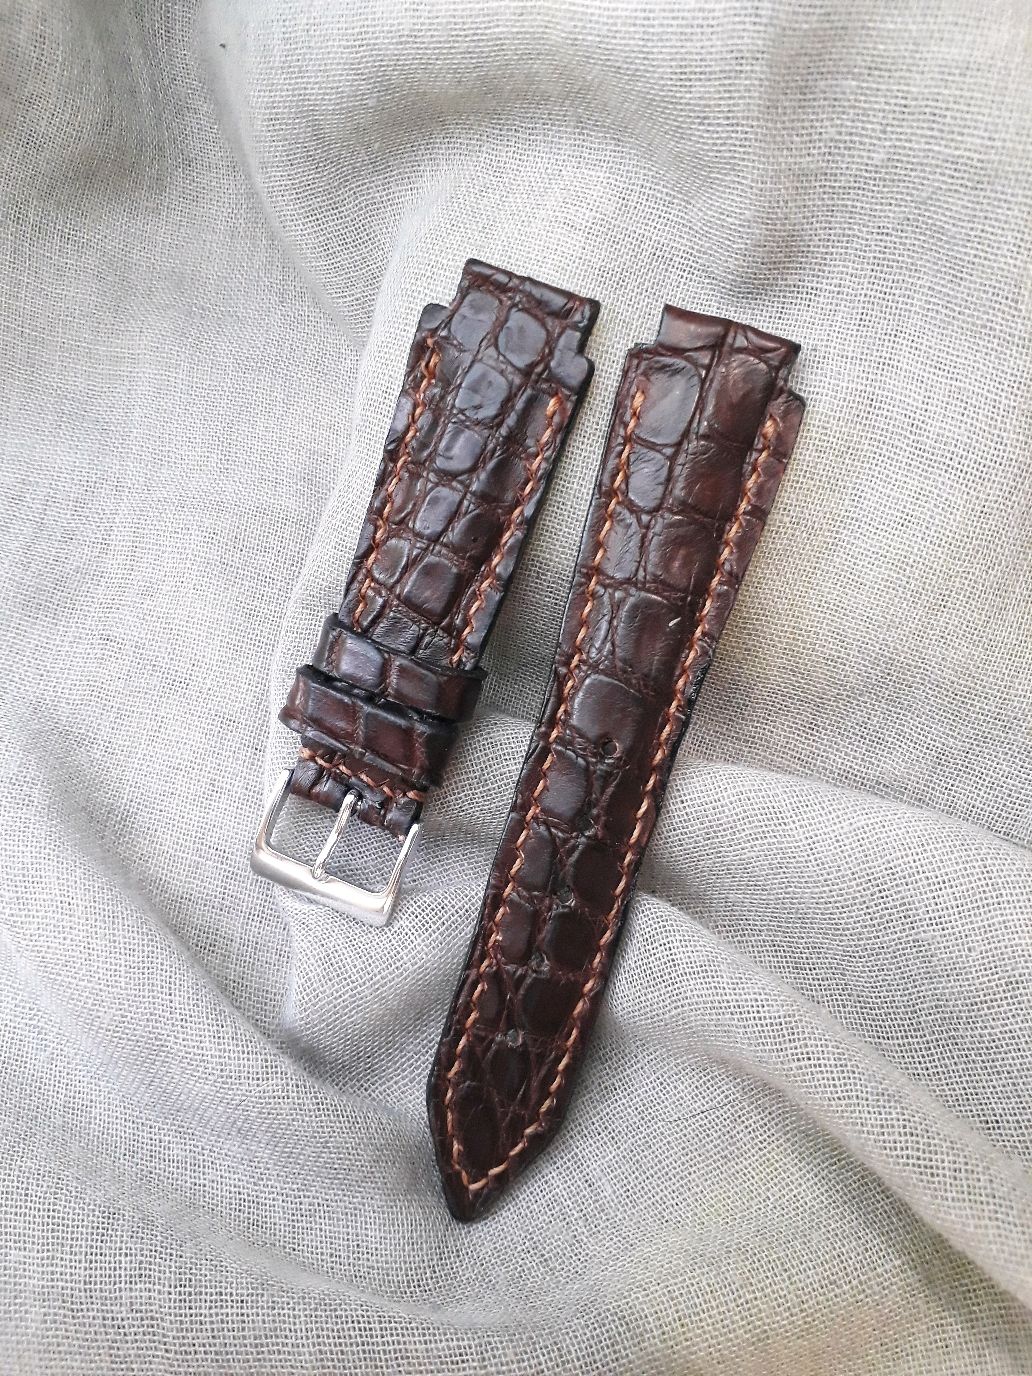 Ремешок для часов коричневого цвета из натуральной кожи крокодила